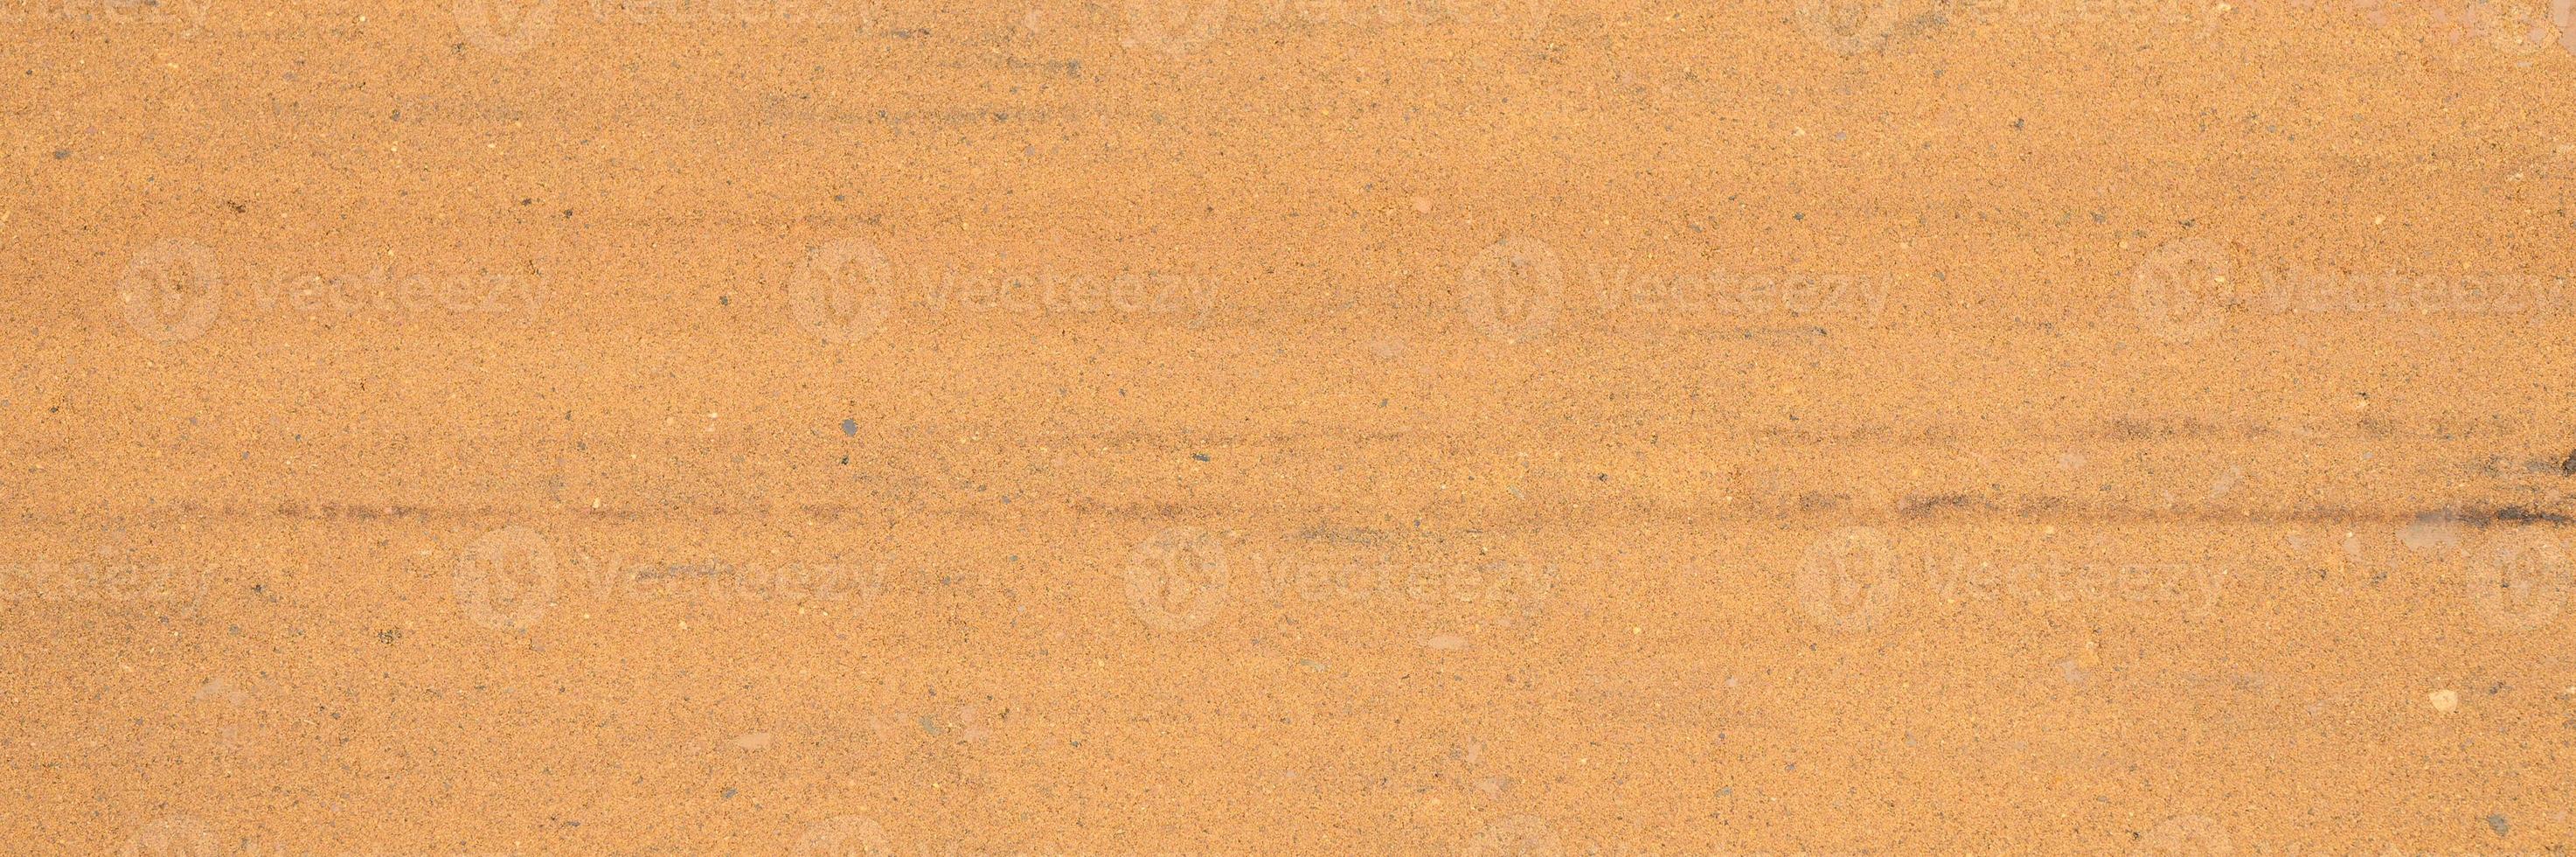 textura de fundo da superfície lisa da areia foto